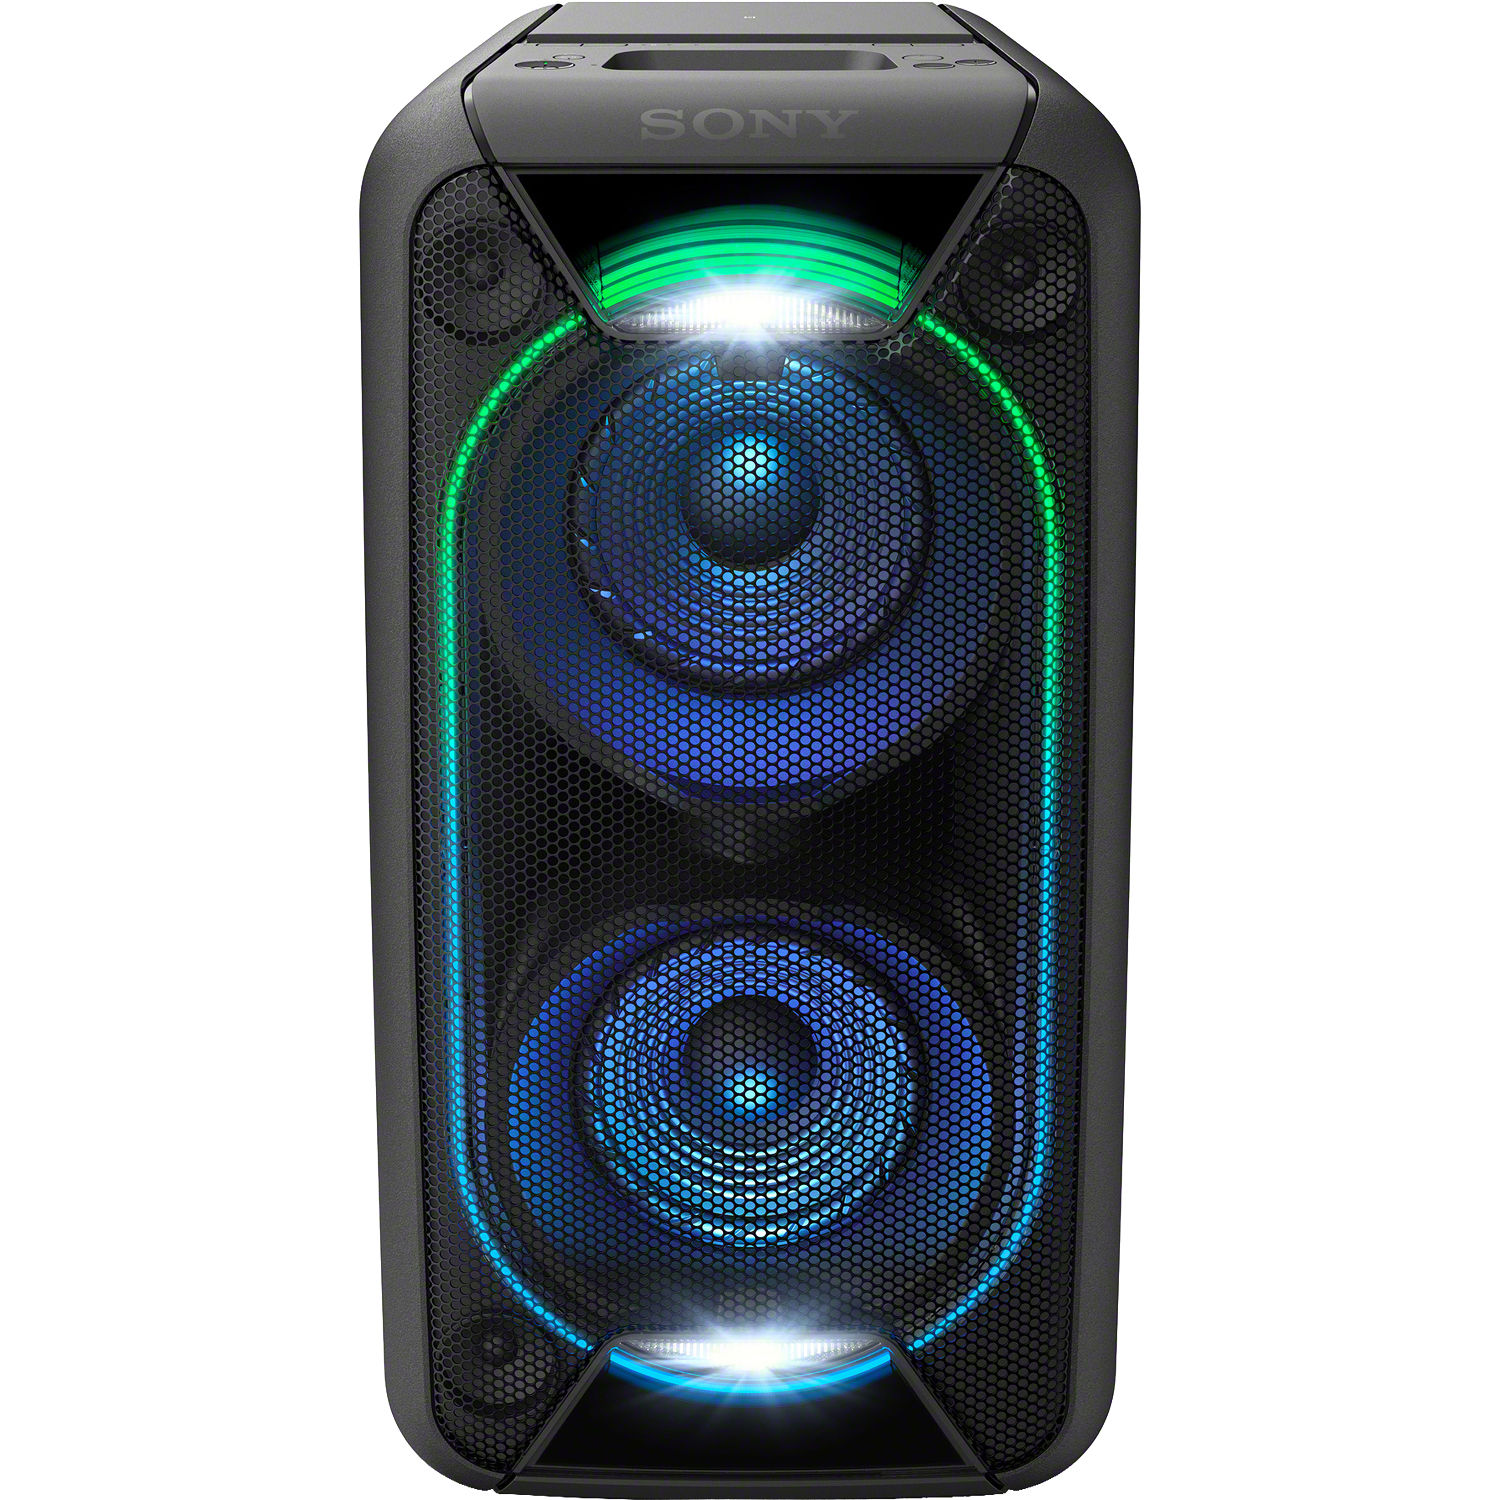 sony multimedia speaker price